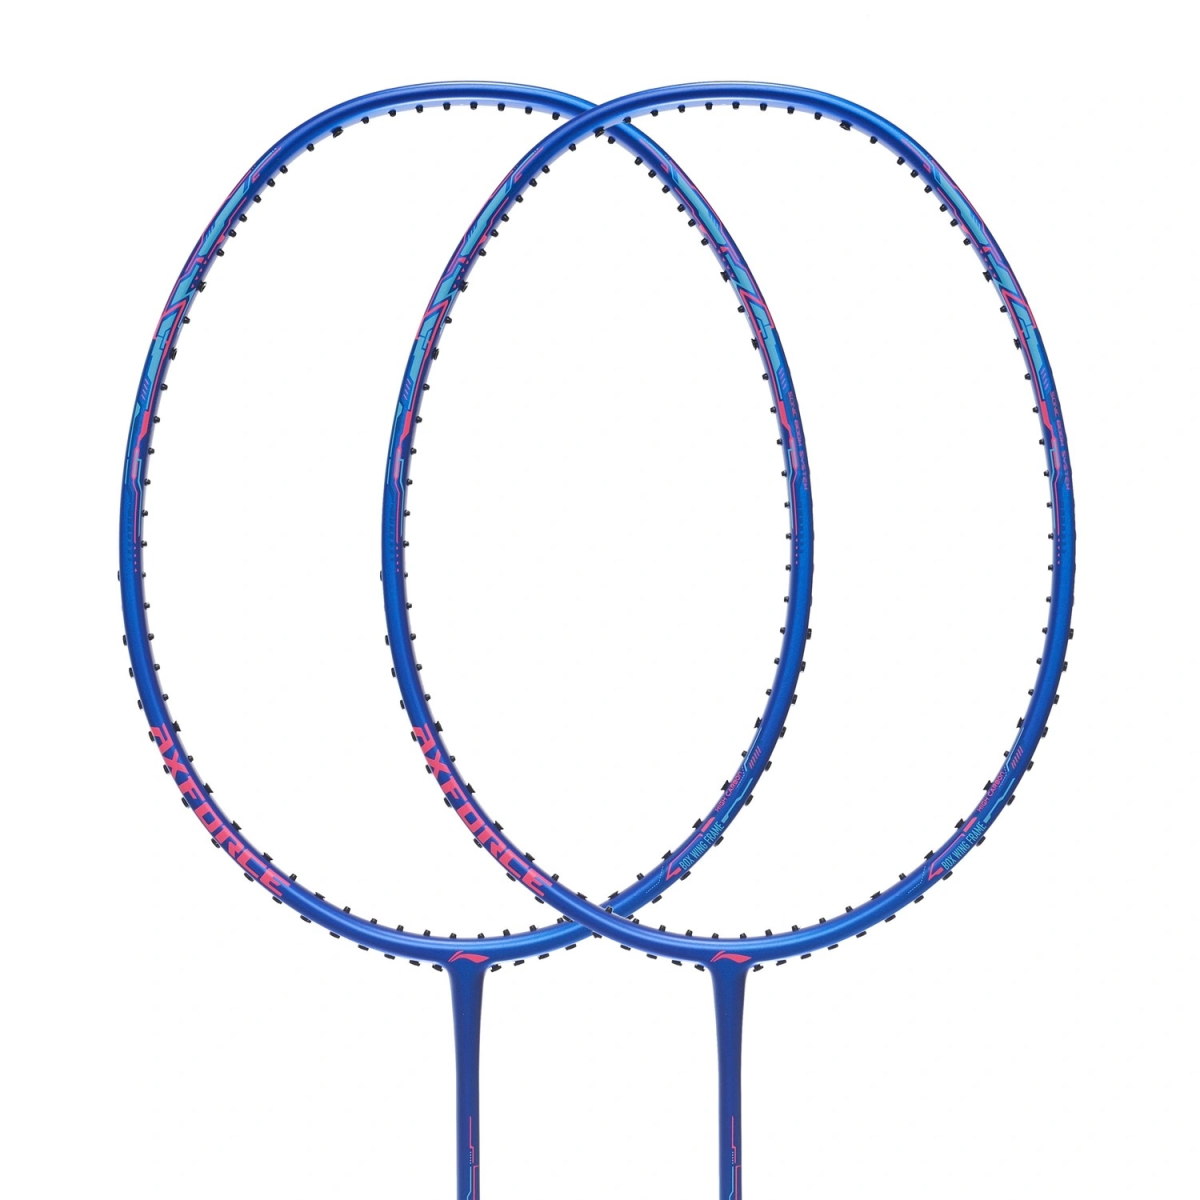 vợt cầu lông Lining Axforce 20